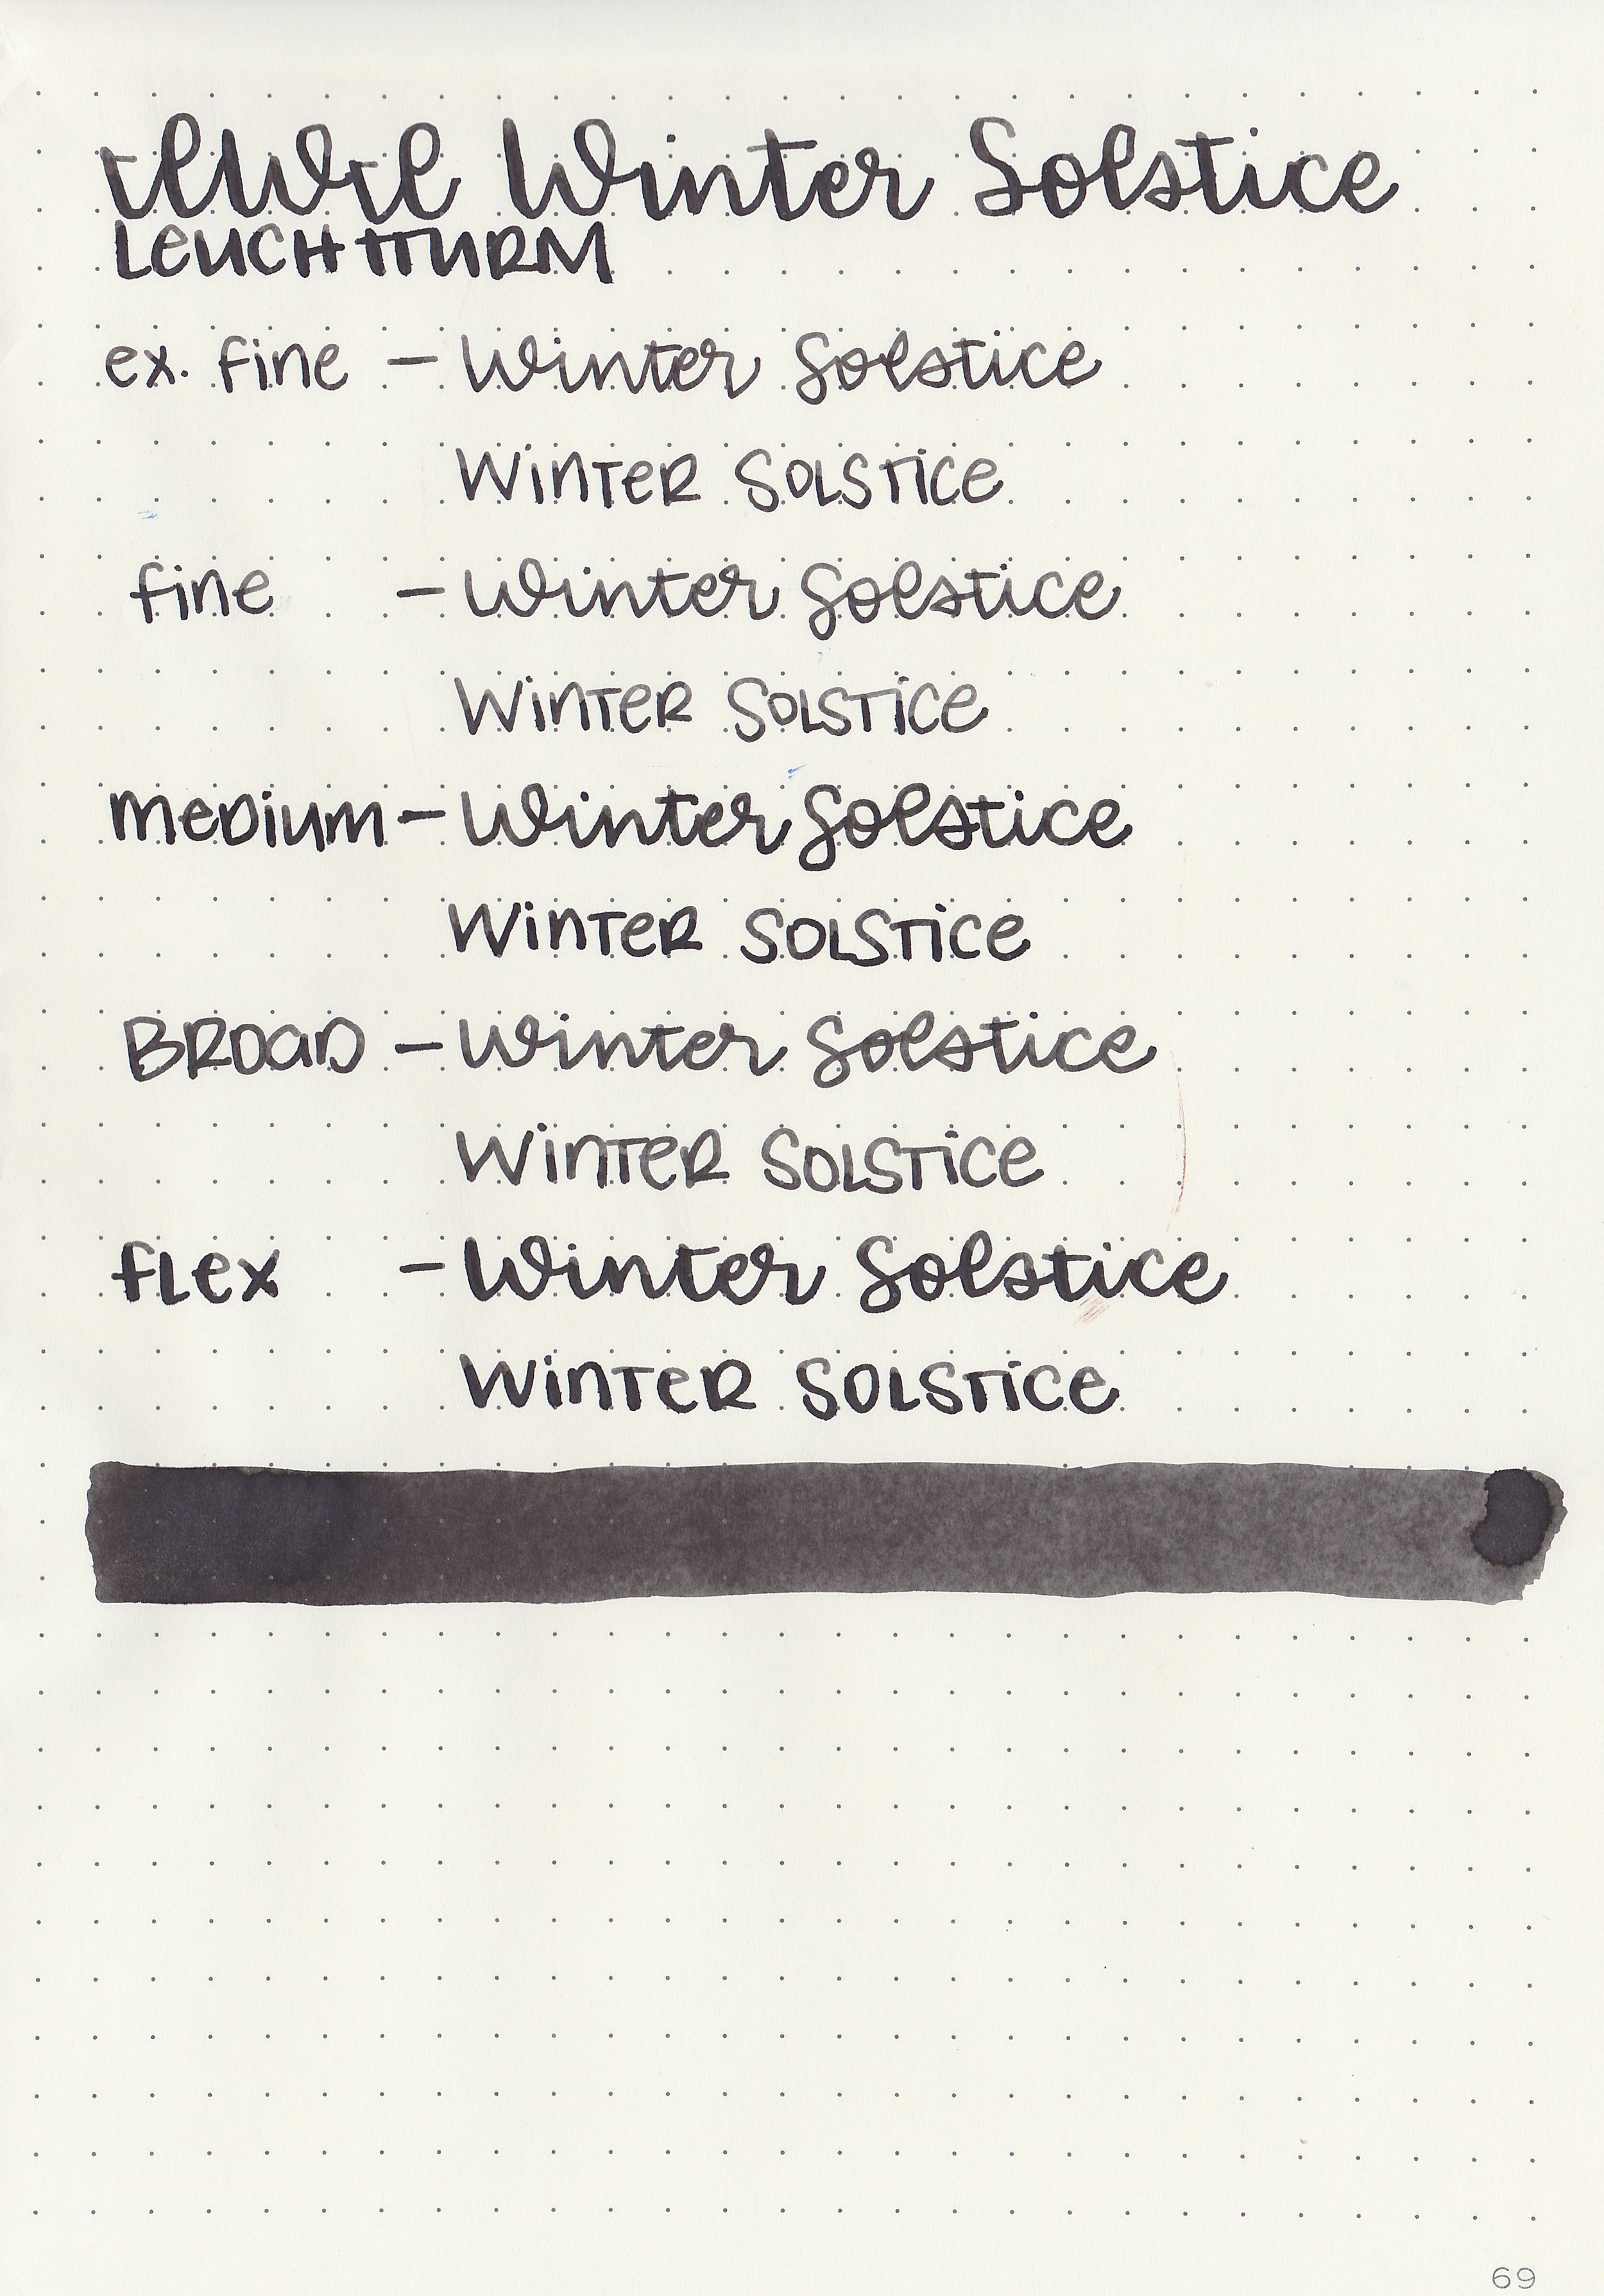 iwi-winter-solstice-9.jpg